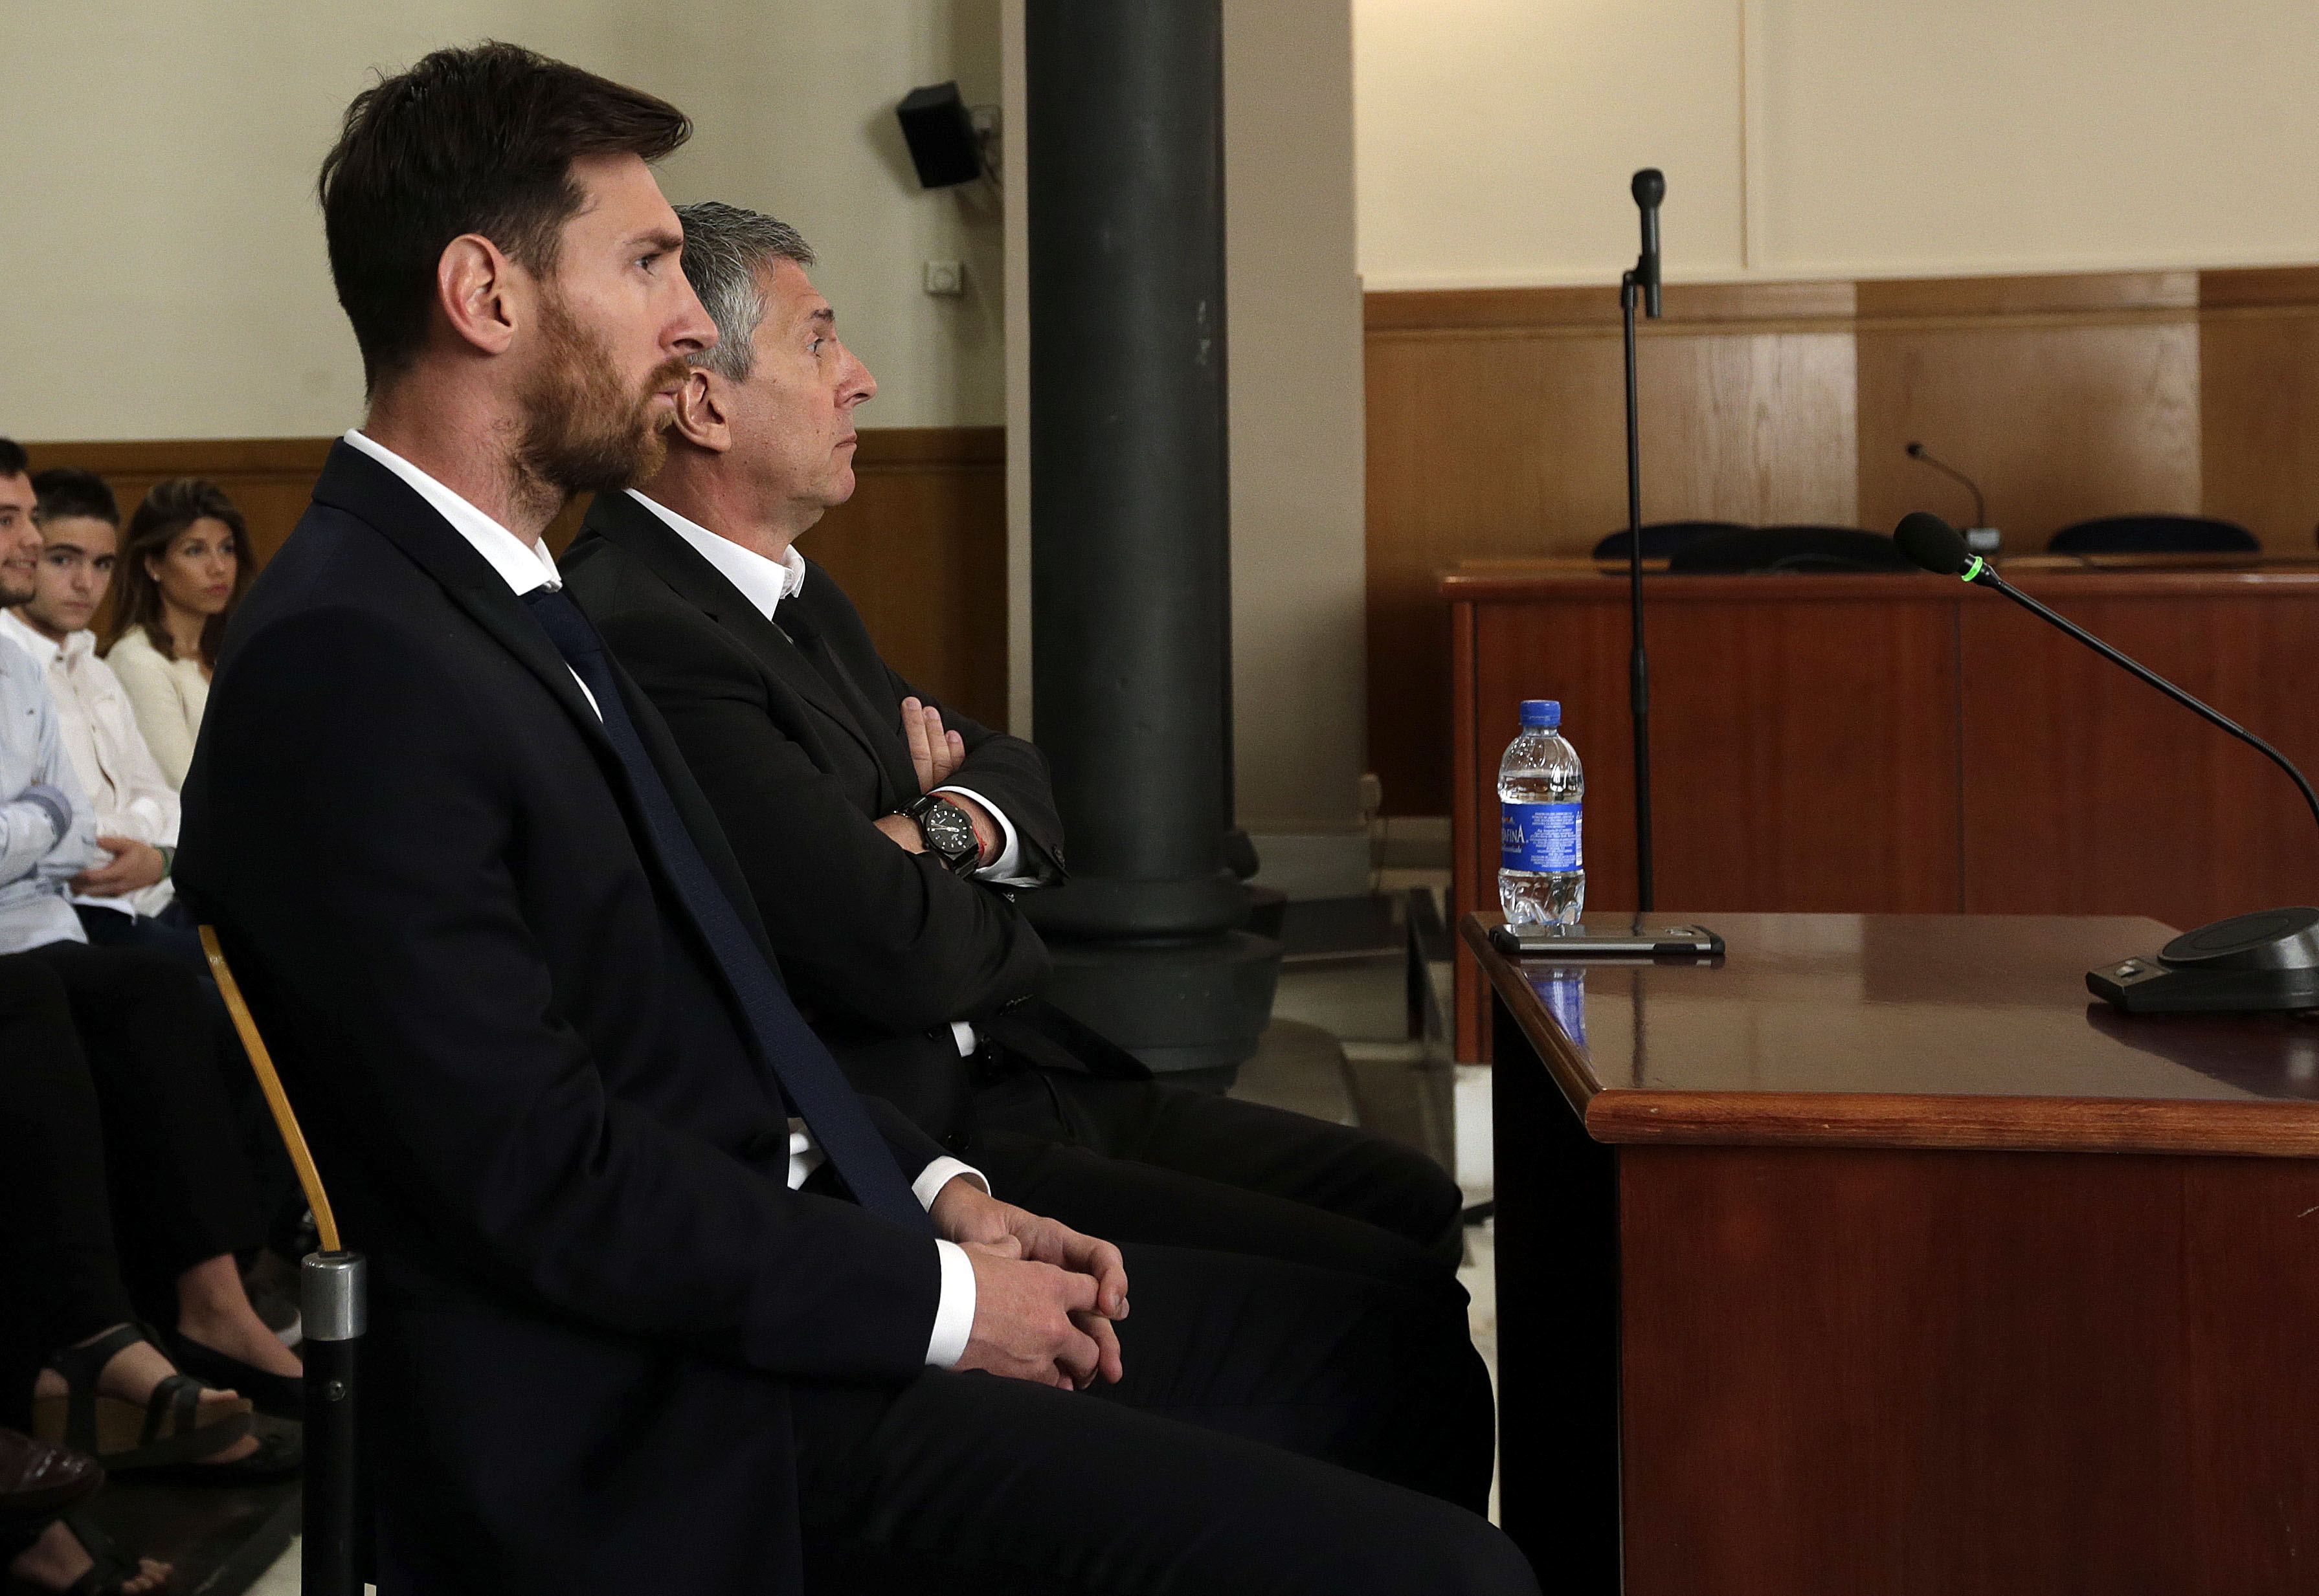 El pare de Messi: "Li vaig dir firma. Va firmar i punt"